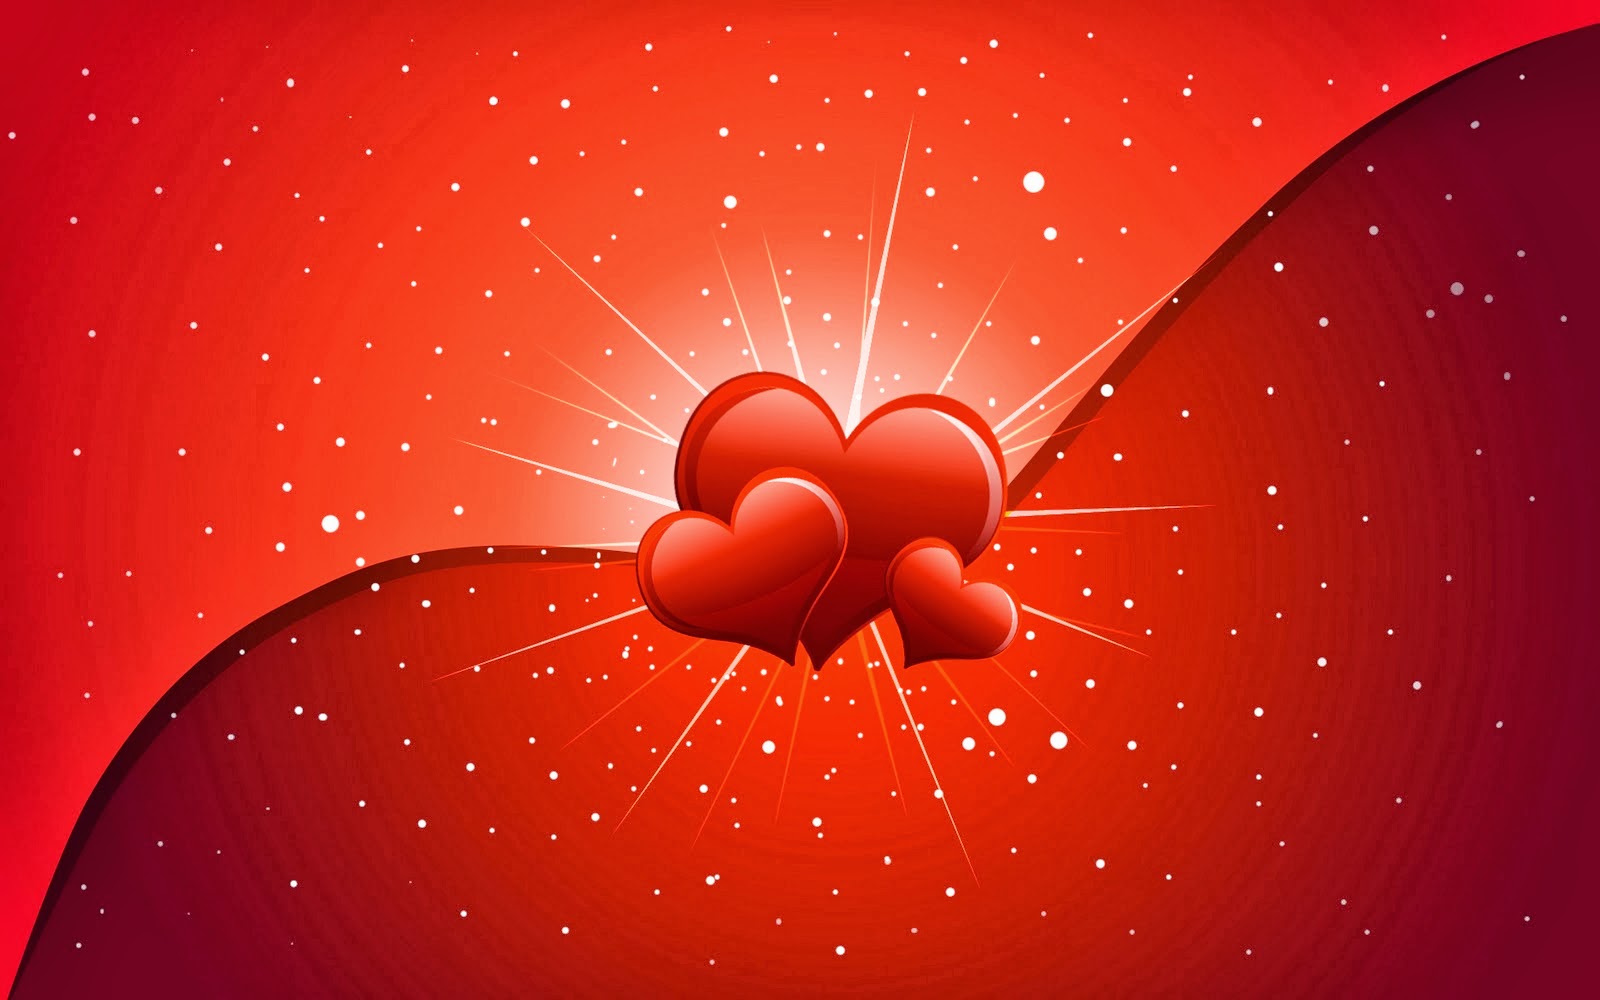 san valentino screensaver sfondi,rosso,cuore,san valentino,grafica,amore